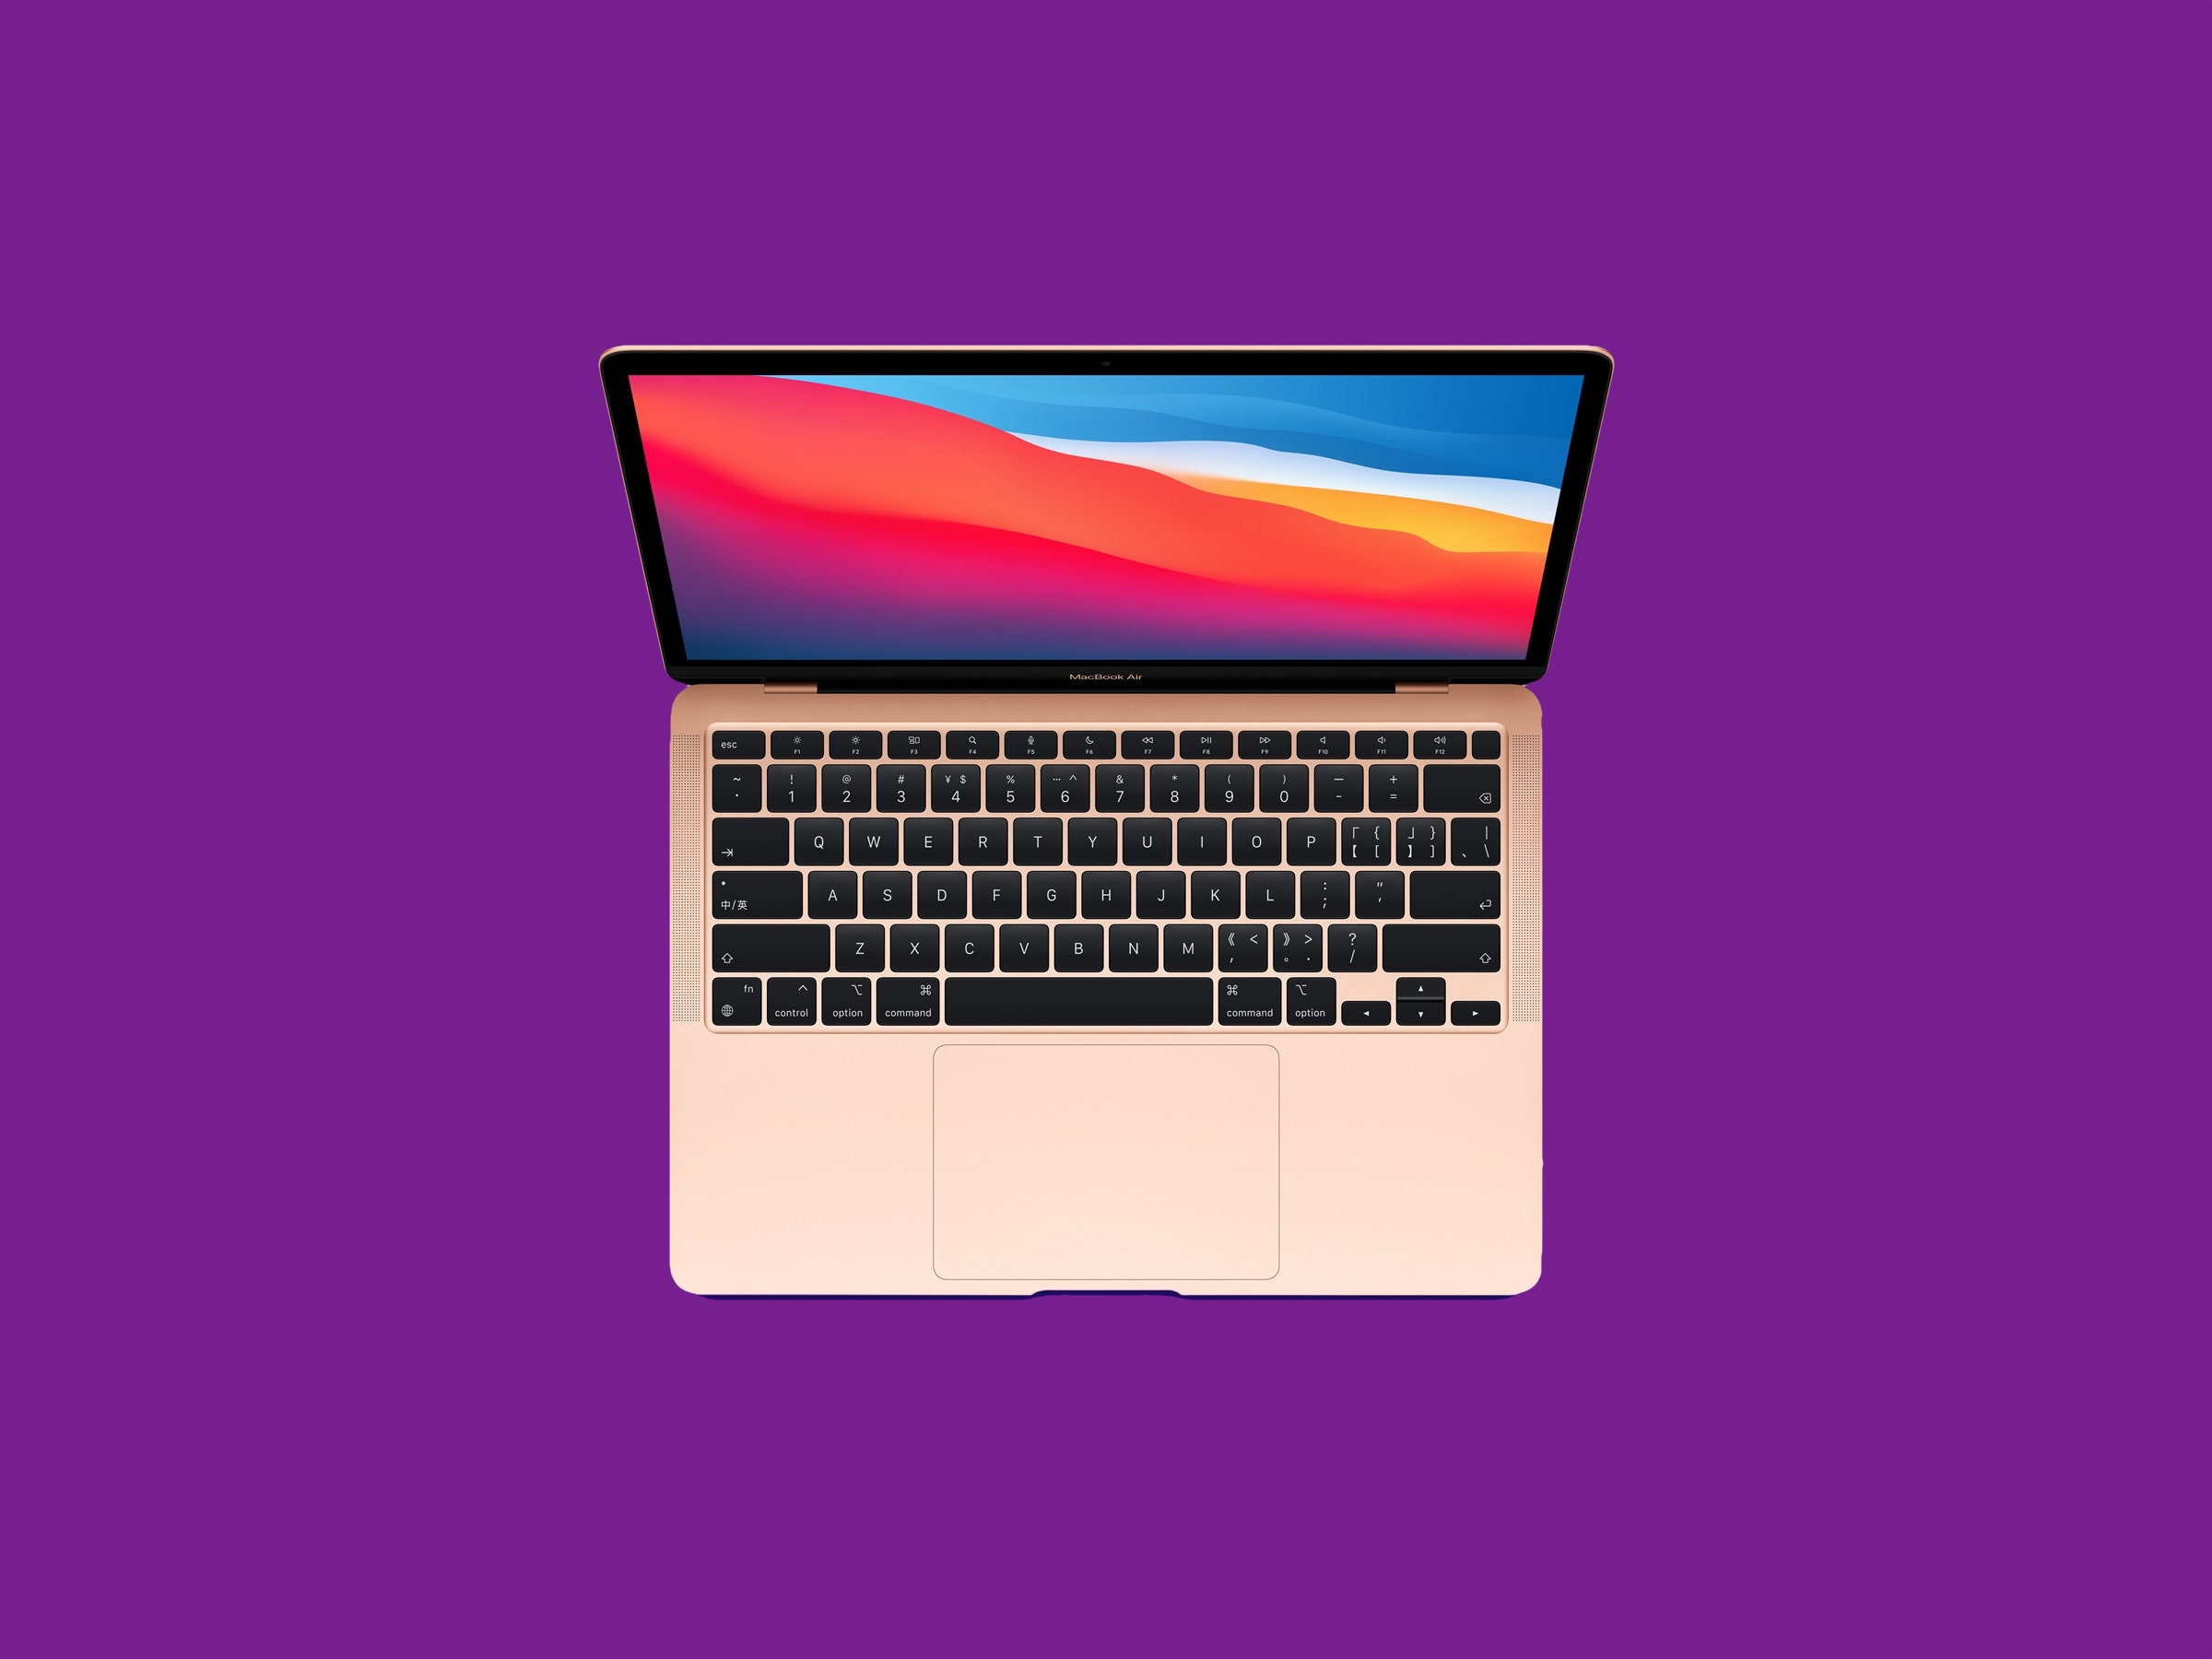 MacBook Air con chip M1 è disponibile su Amazon a 899 dollari (100 dollari di sconto)